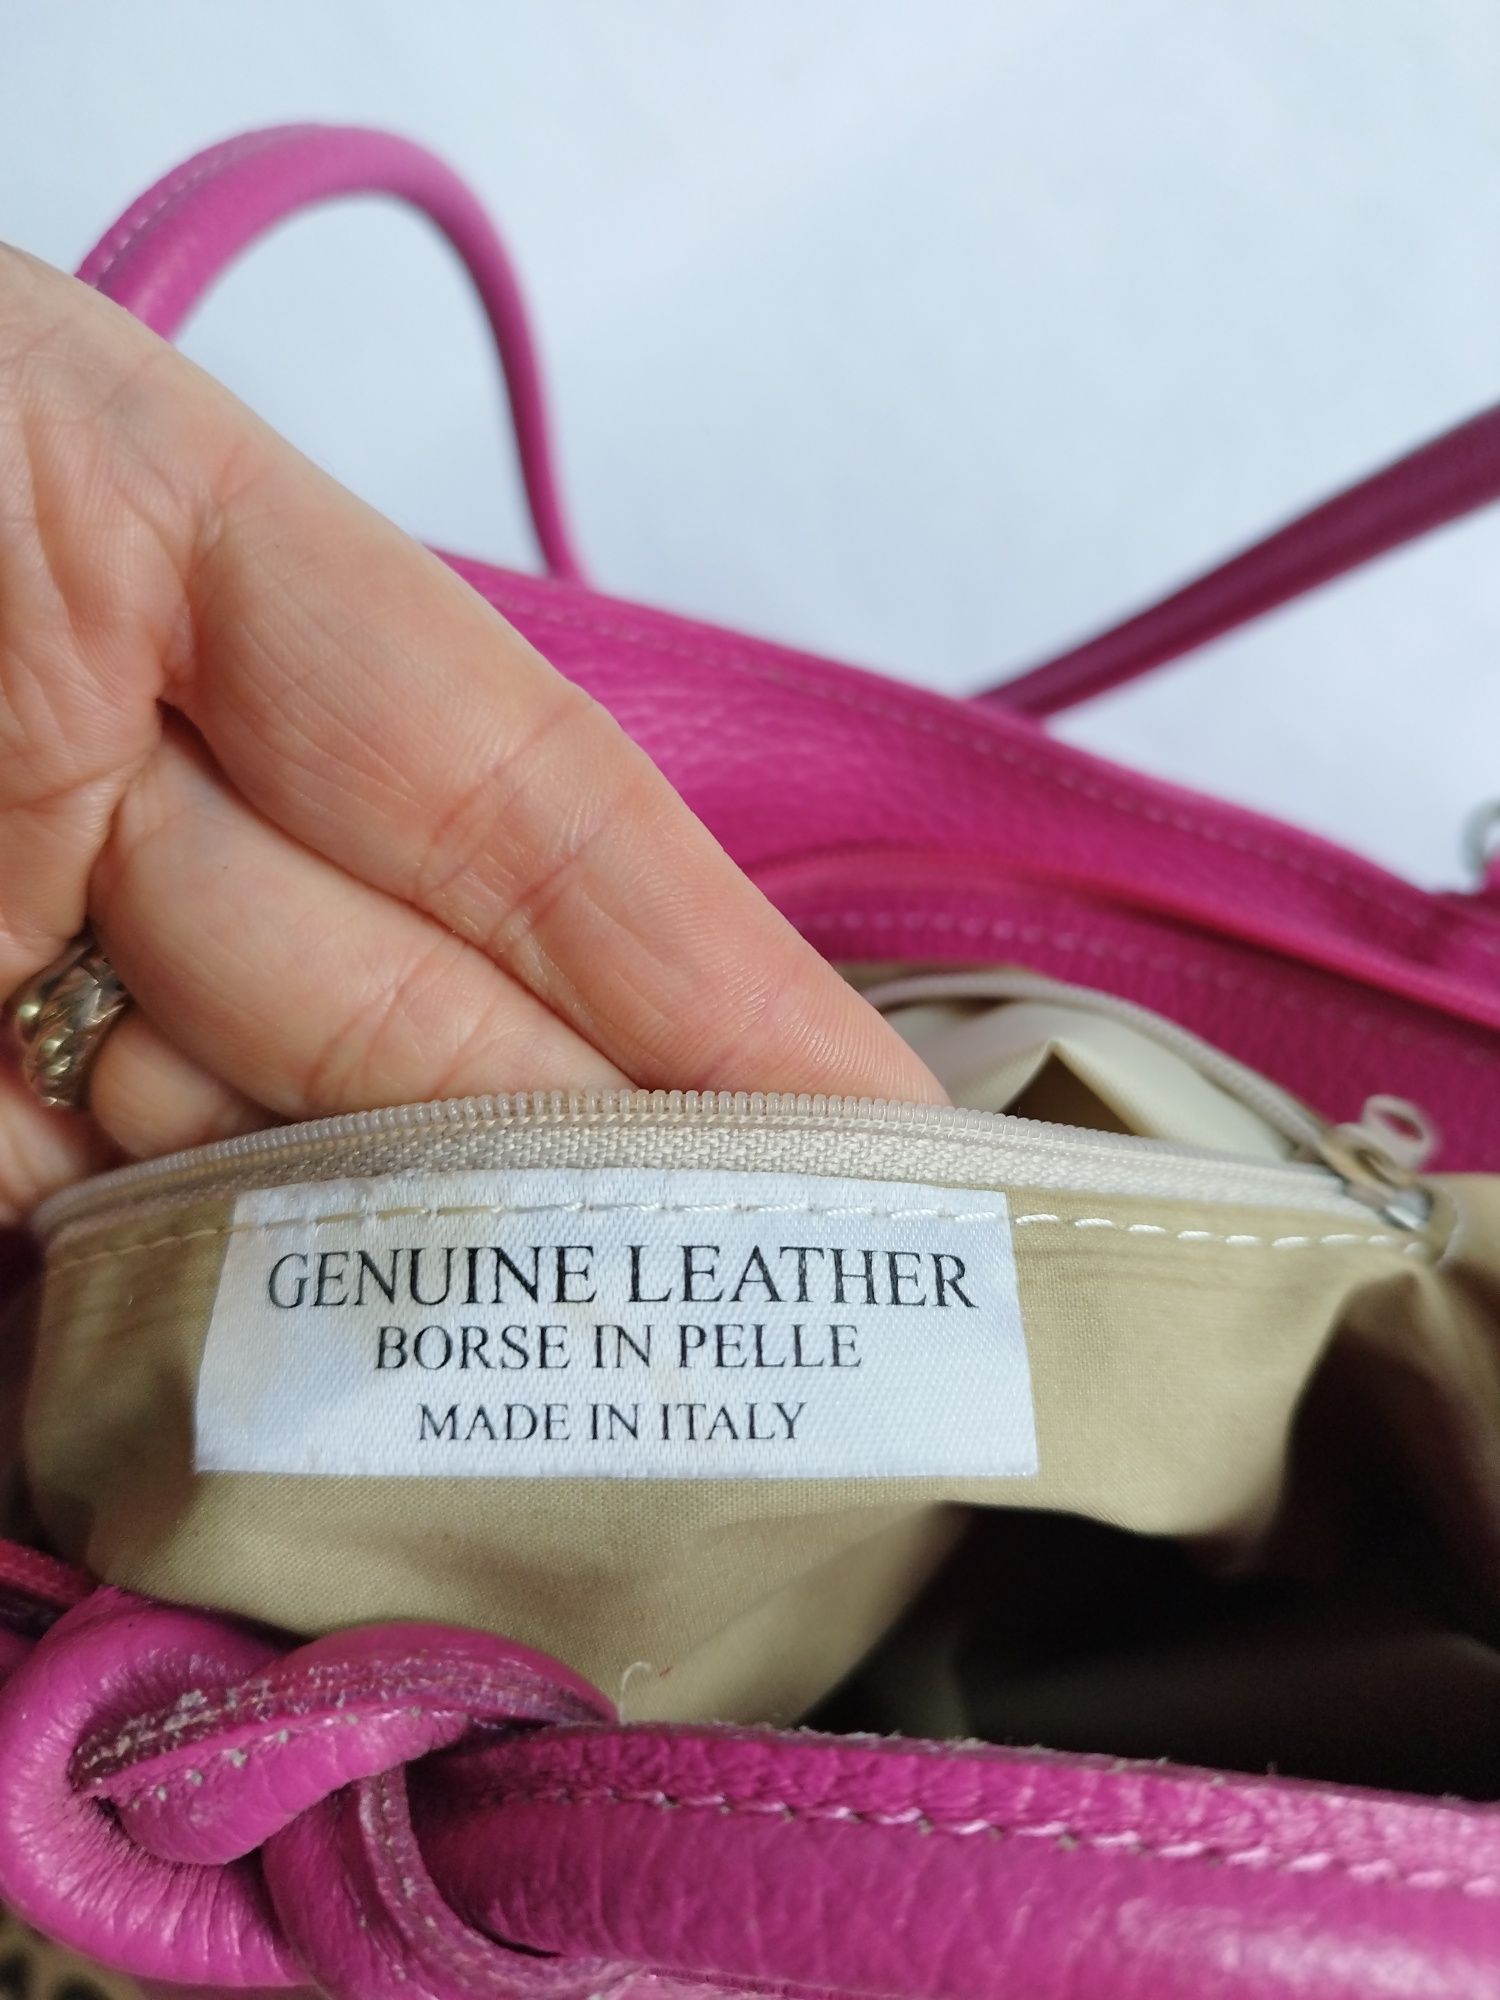 Цветна италианска чанта от естествена кожа / НОВА